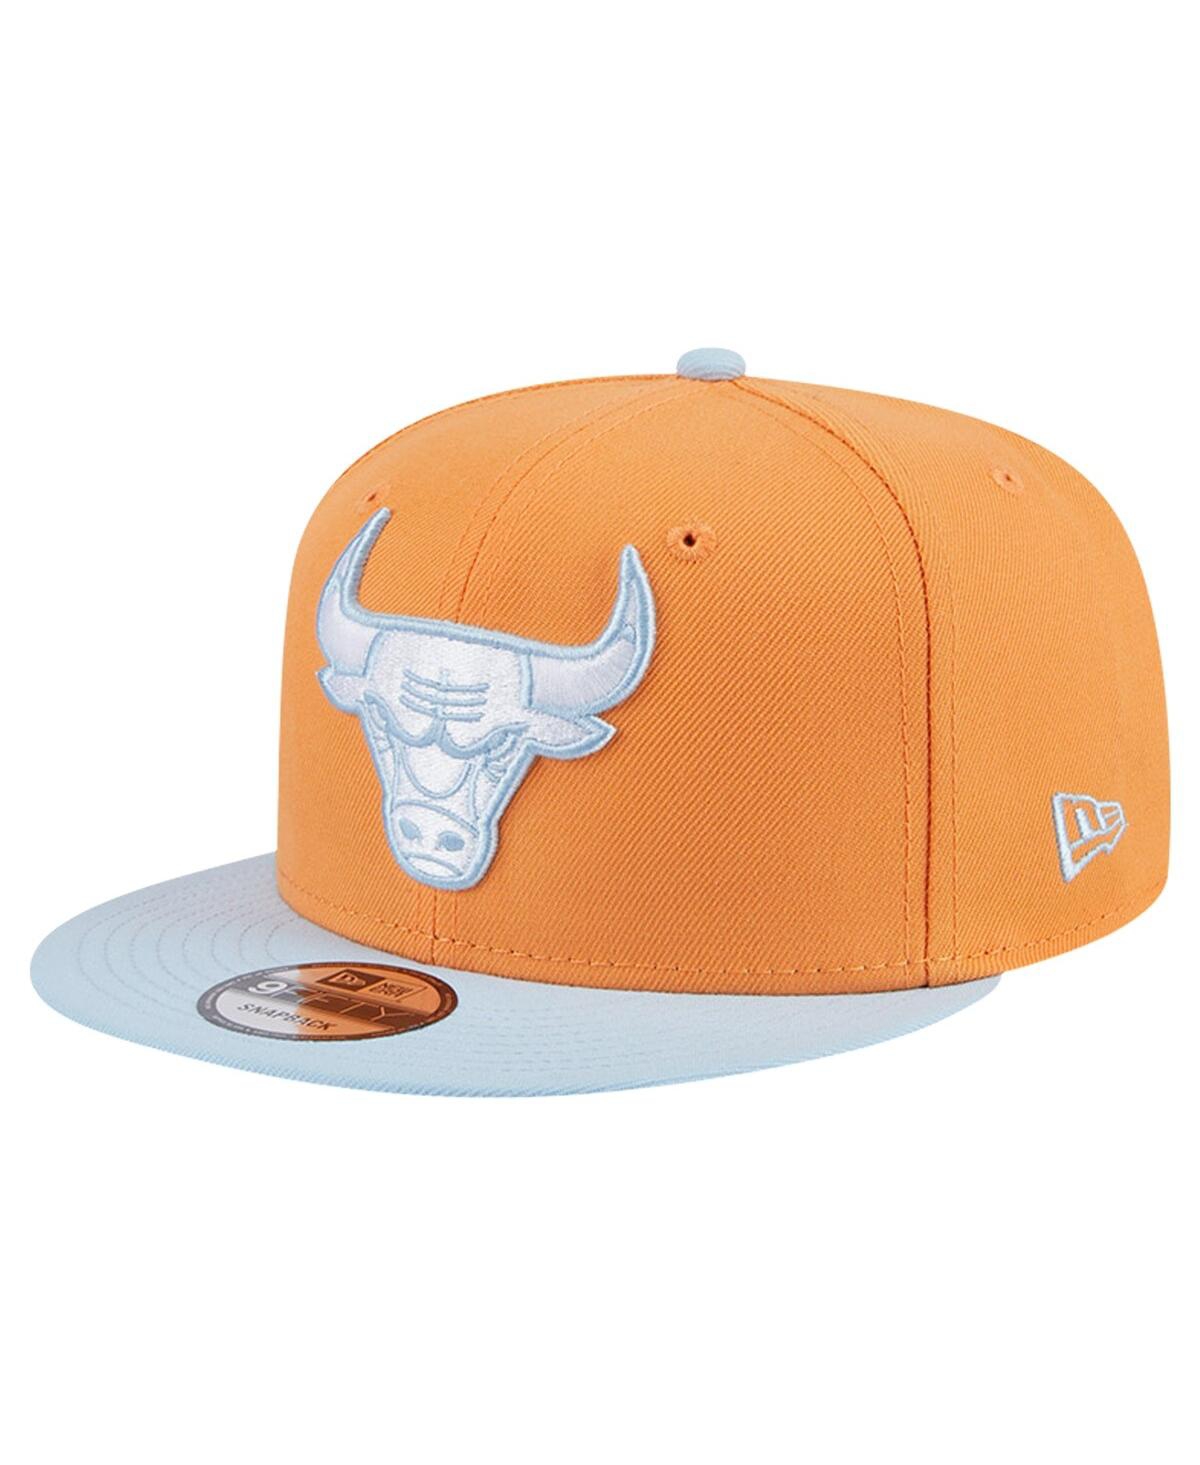 Men's Orange/Light Blue Chicago Bulls 2-Tone Color Pack 9fifty Snapback Hat - Orange Lig